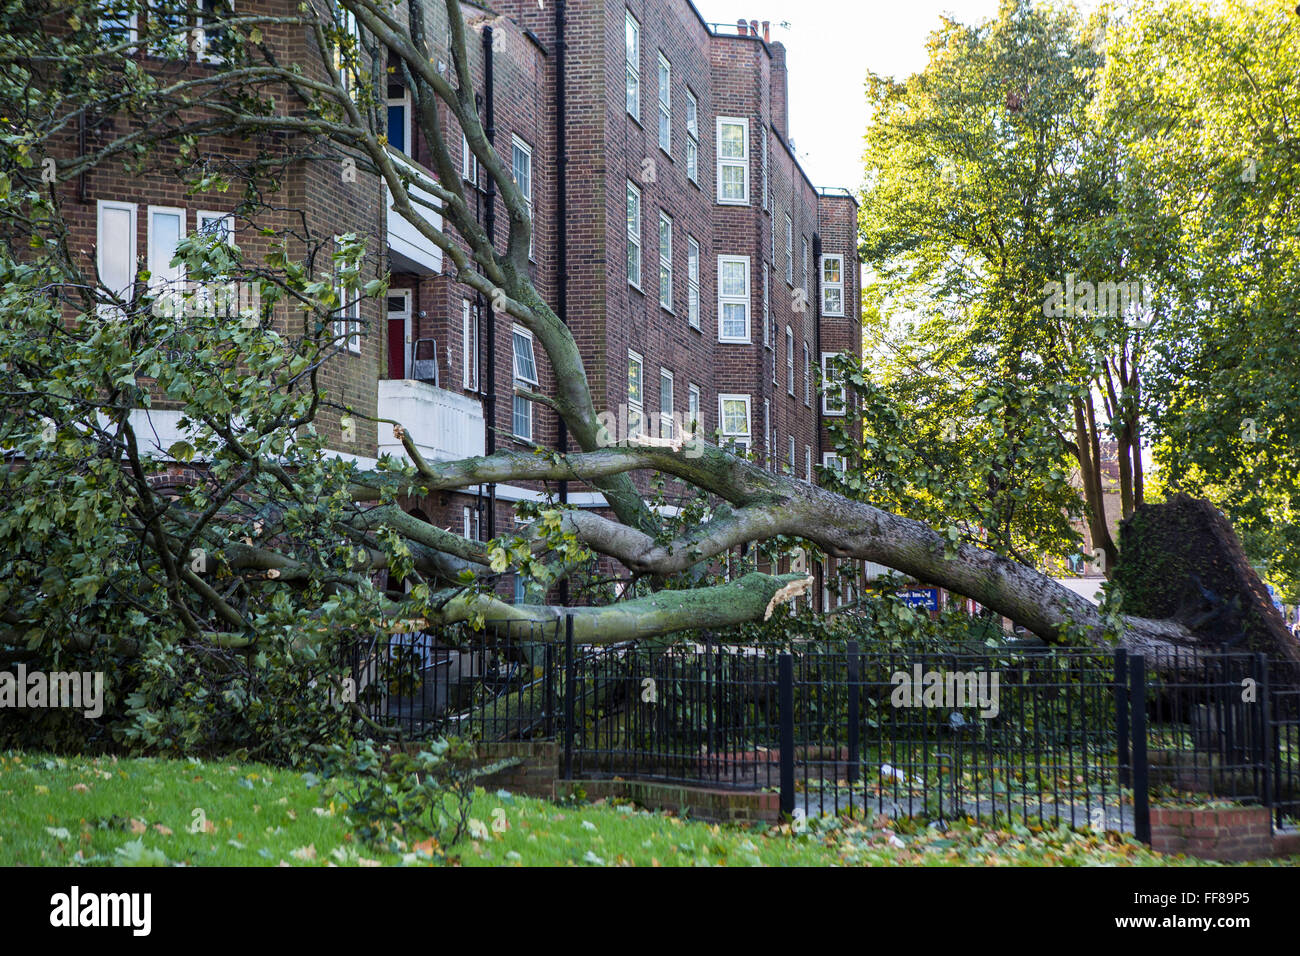 Un grand arbre avec ses racines arrachés du sol, déracinés sur Stamford Hill Estate, Londres, Royaume-Uni. De graves dommages causés par la tempête. Banque D'Images